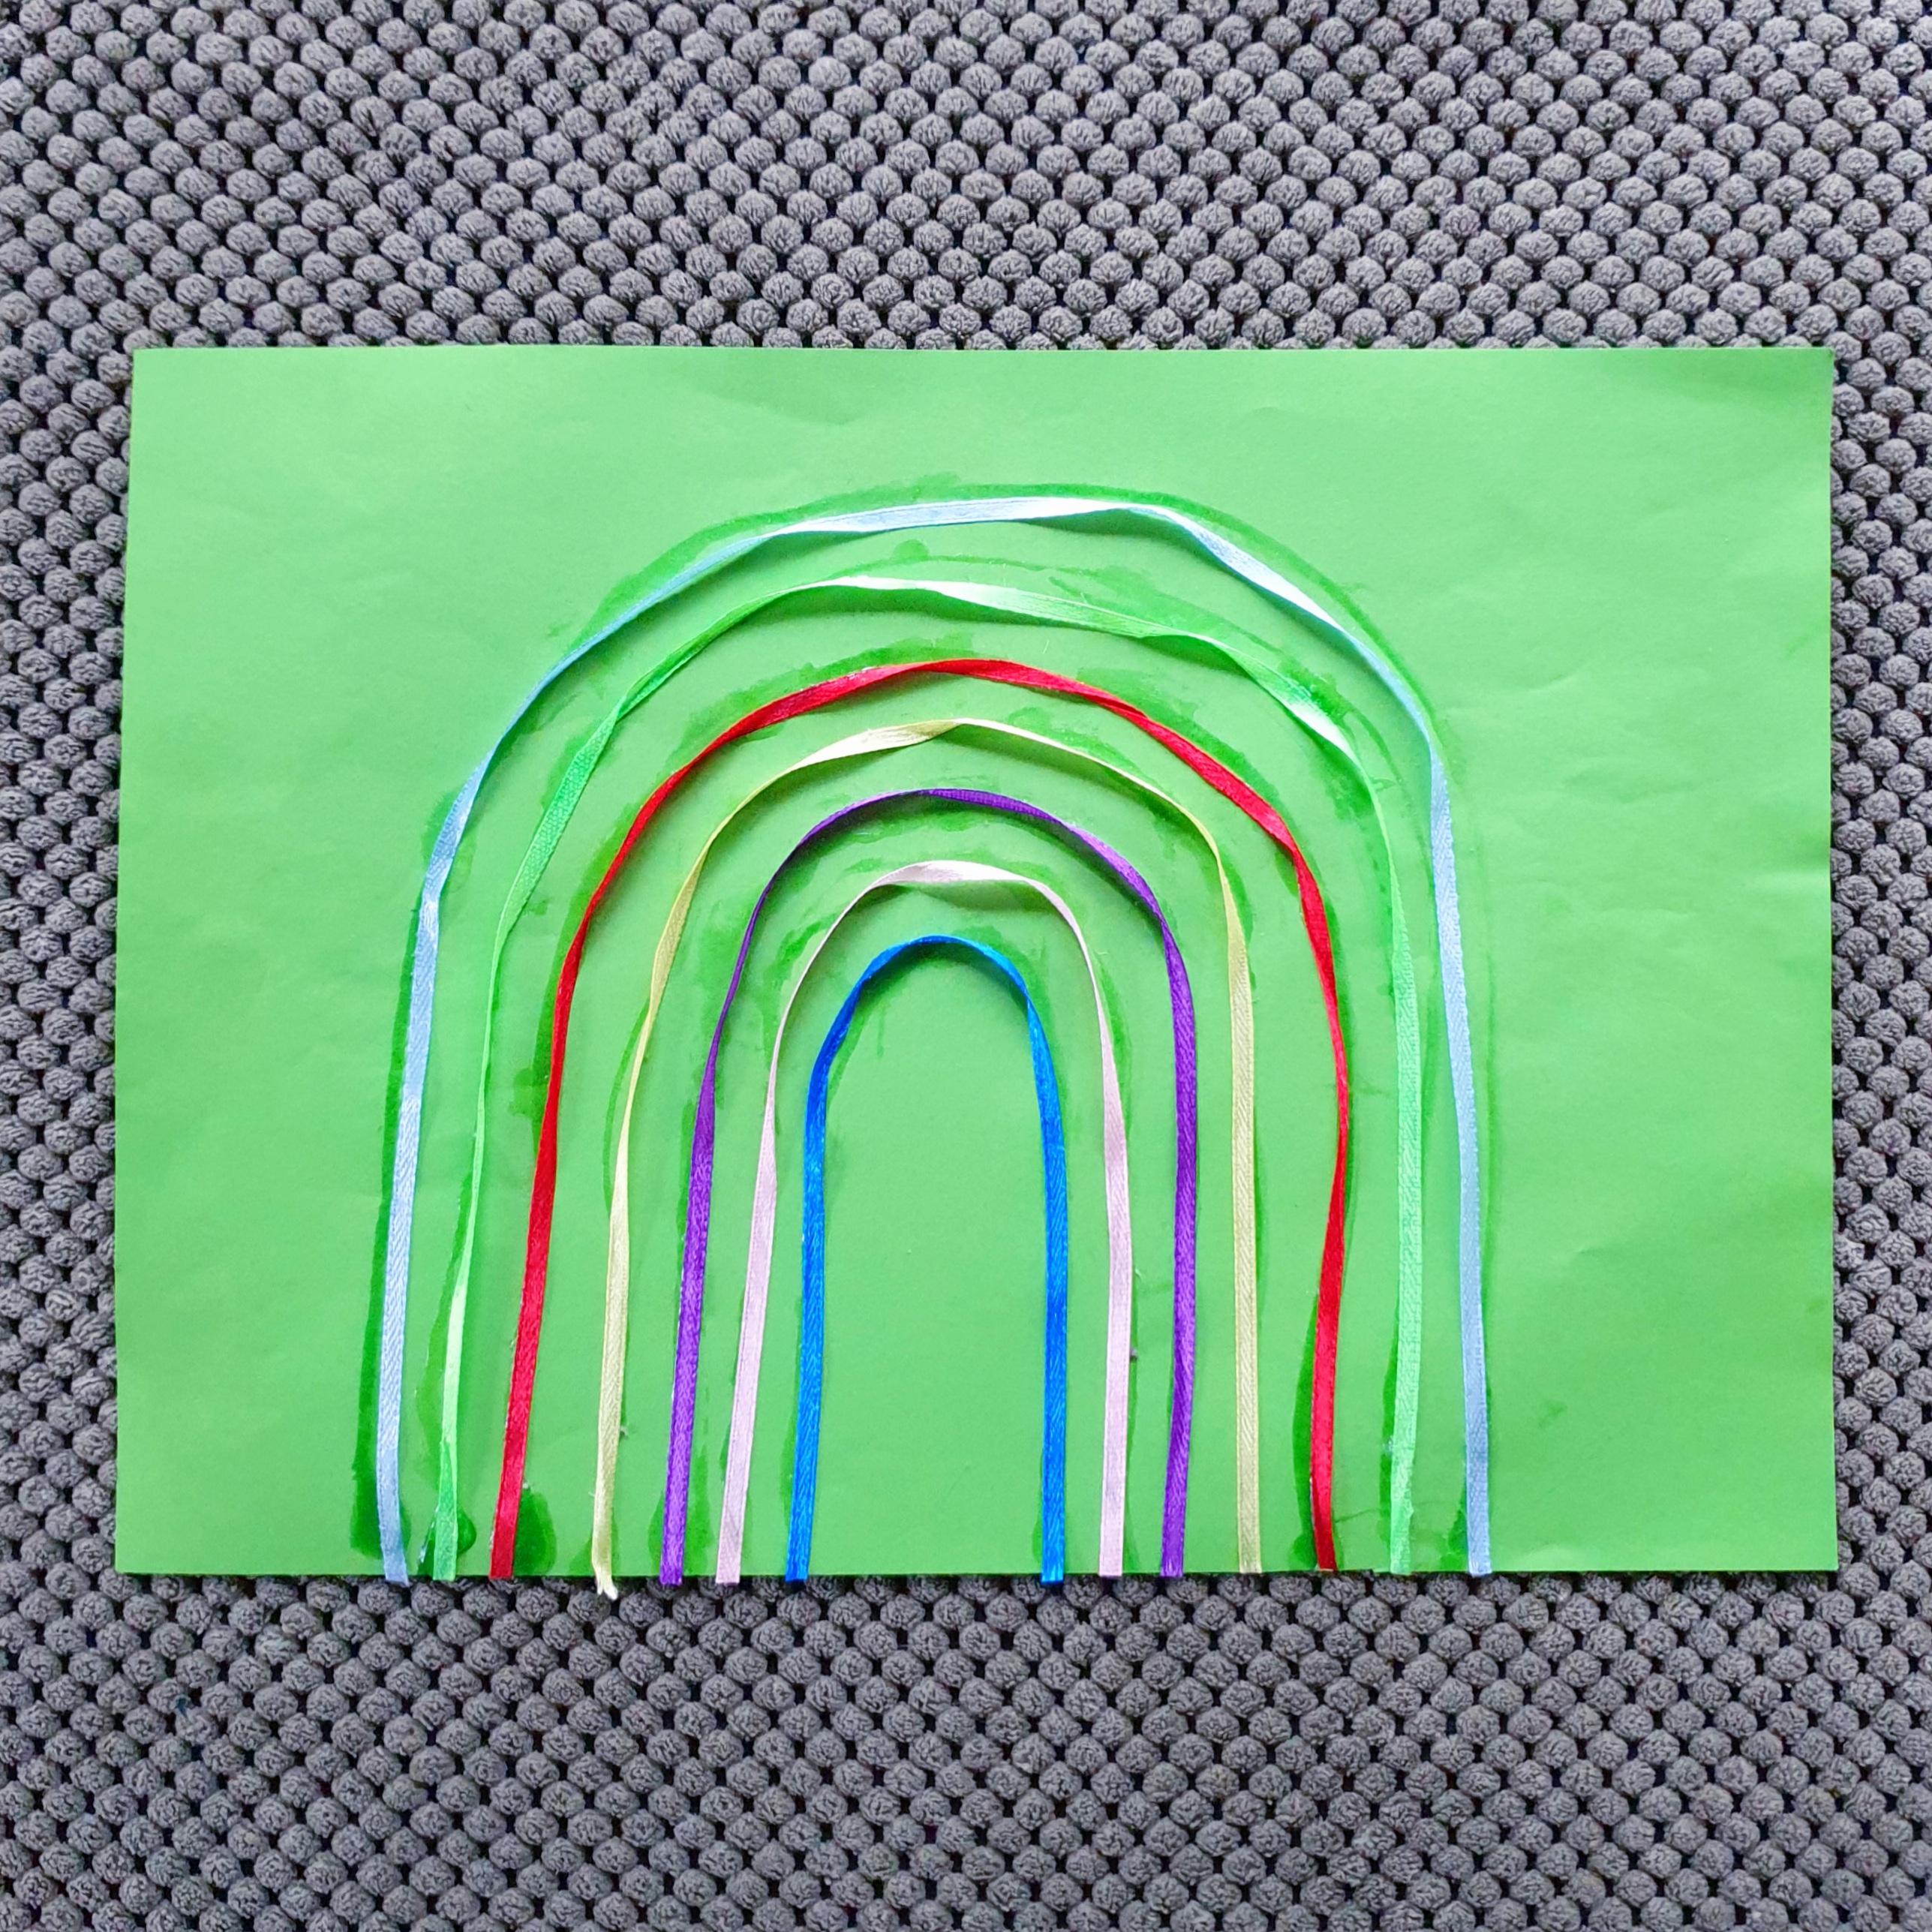 101 ideeën om te knutselen met kinderen. Deze regenboog maakten we van lintjes en gekleurd papier. We begonnen met het binnenste lintje en werkten naar buiten toe. Eerst maakten we met knutsellijm een boogje op het papier. Daarna plakten we het lintje er op. 